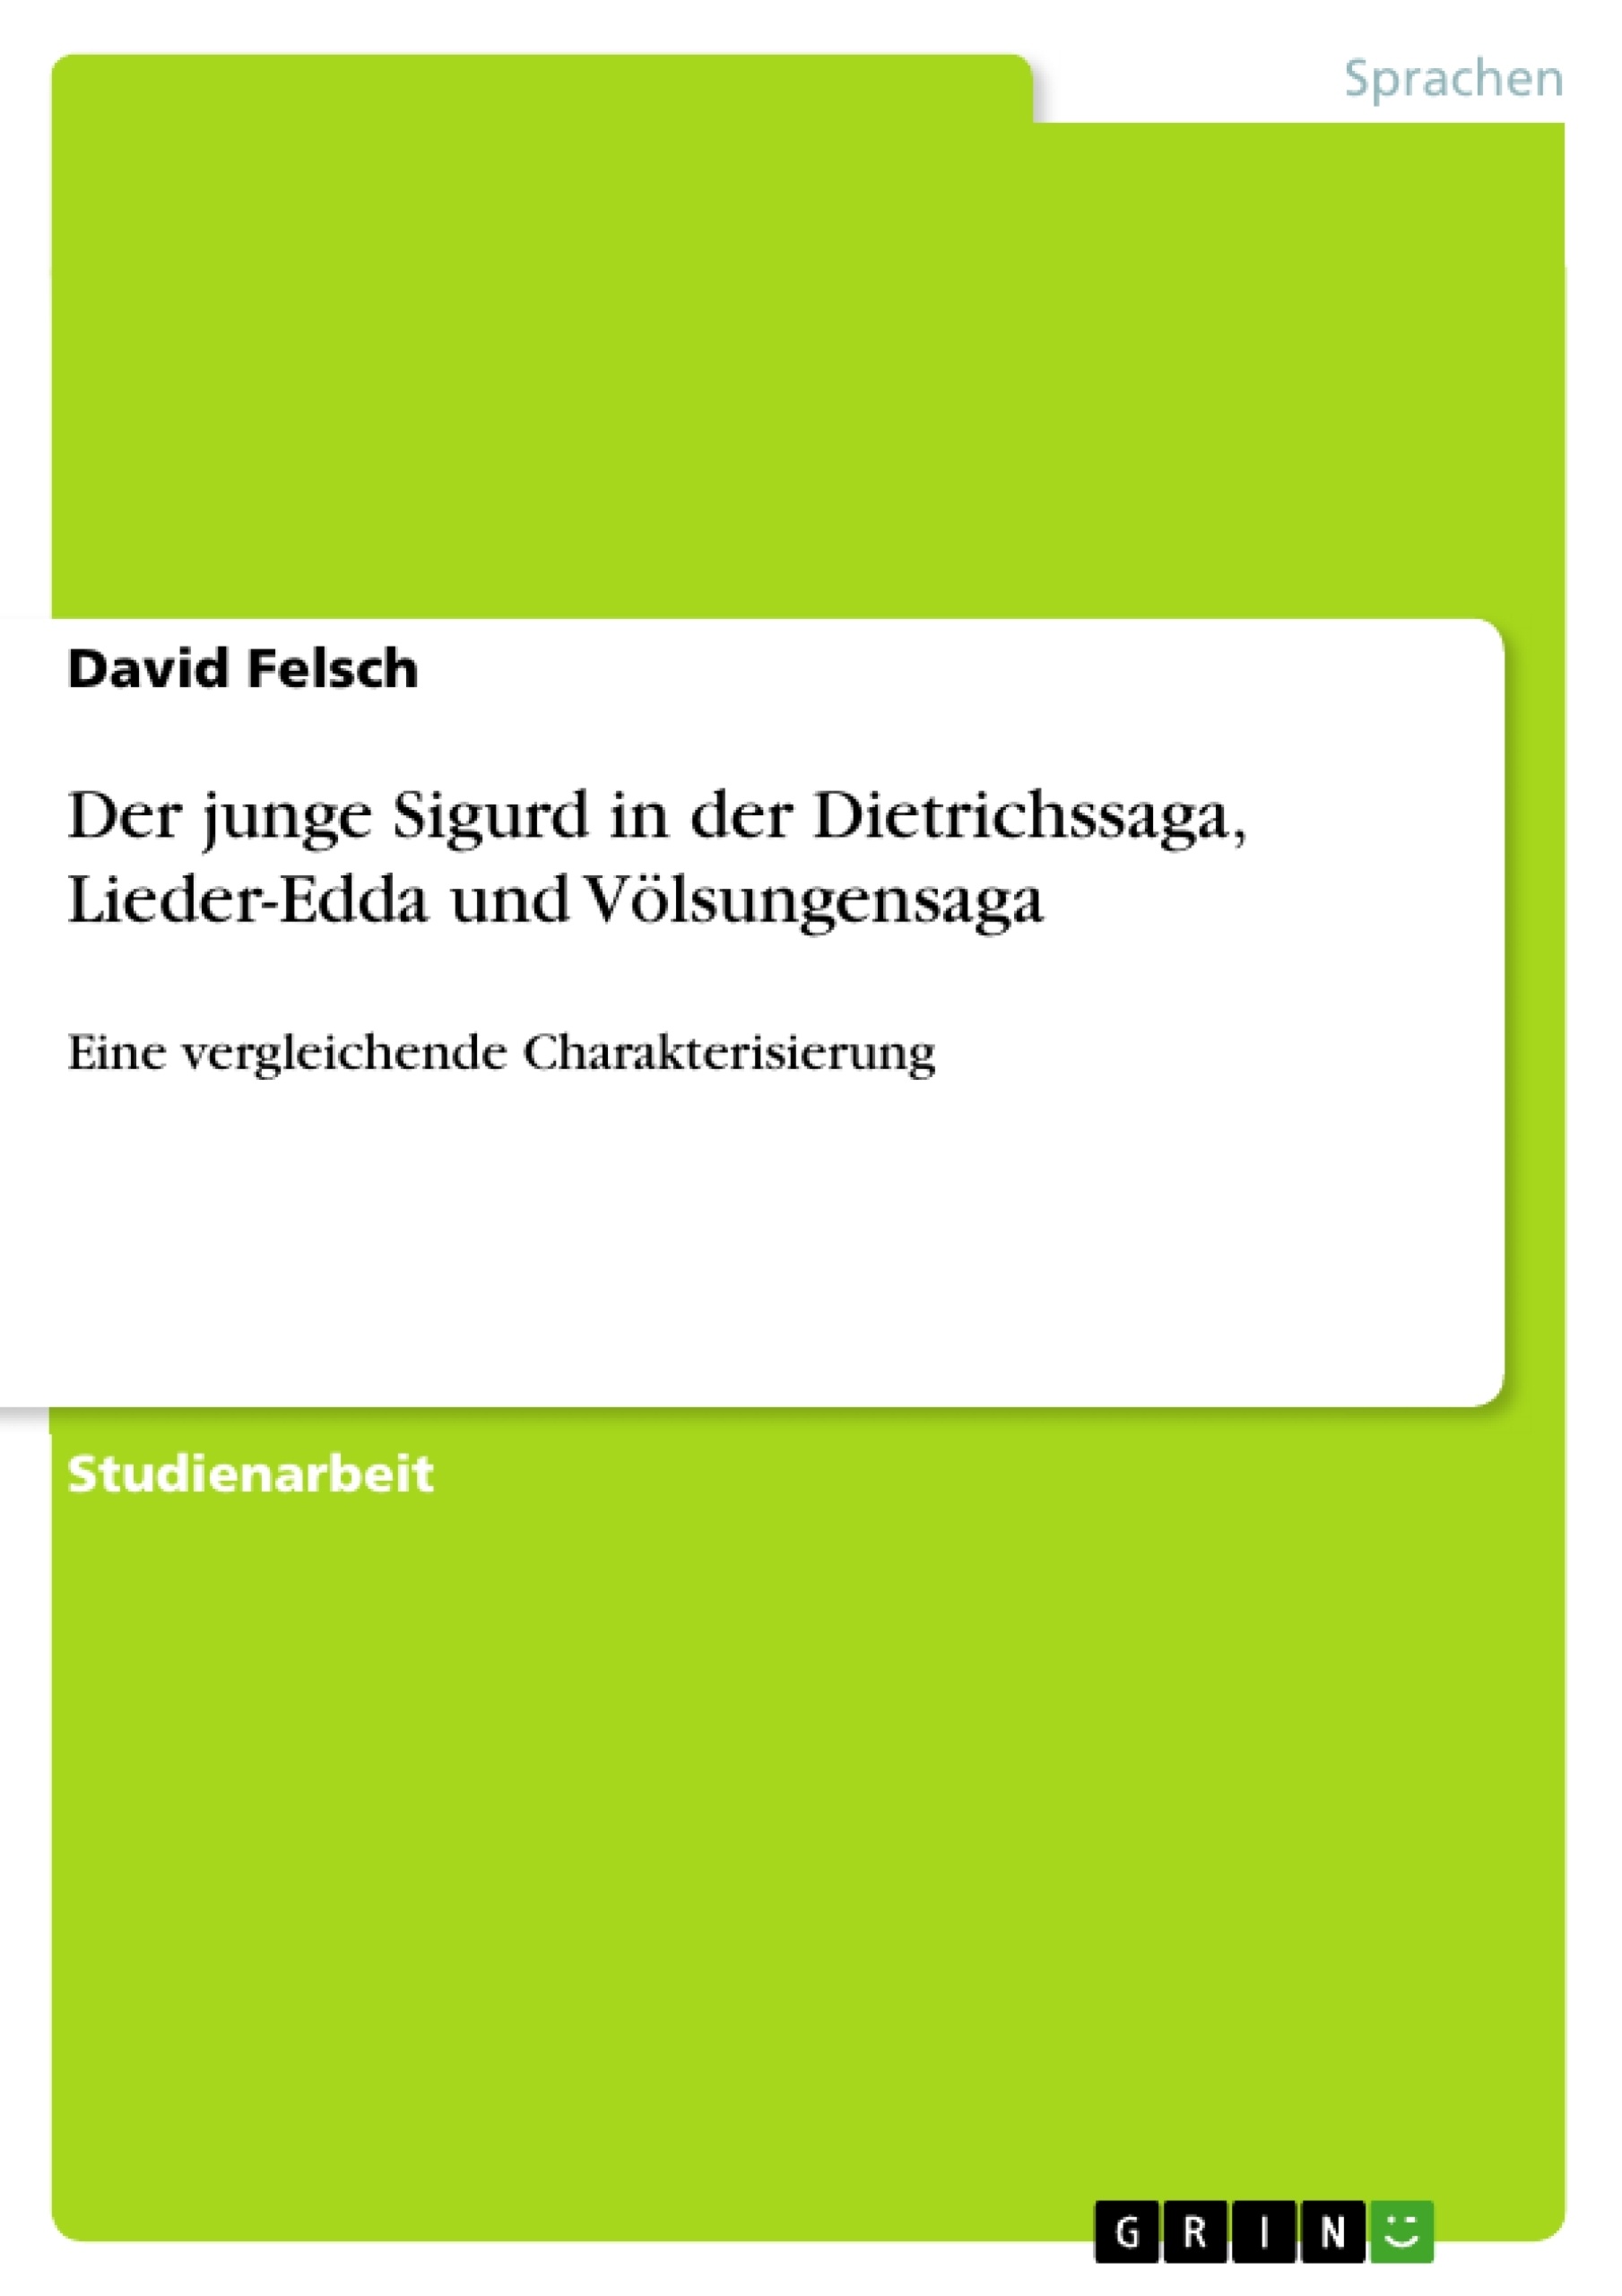 Título: Der junge Sigurd in der Dietrichssaga, Lieder-Edda und Völsungensaga